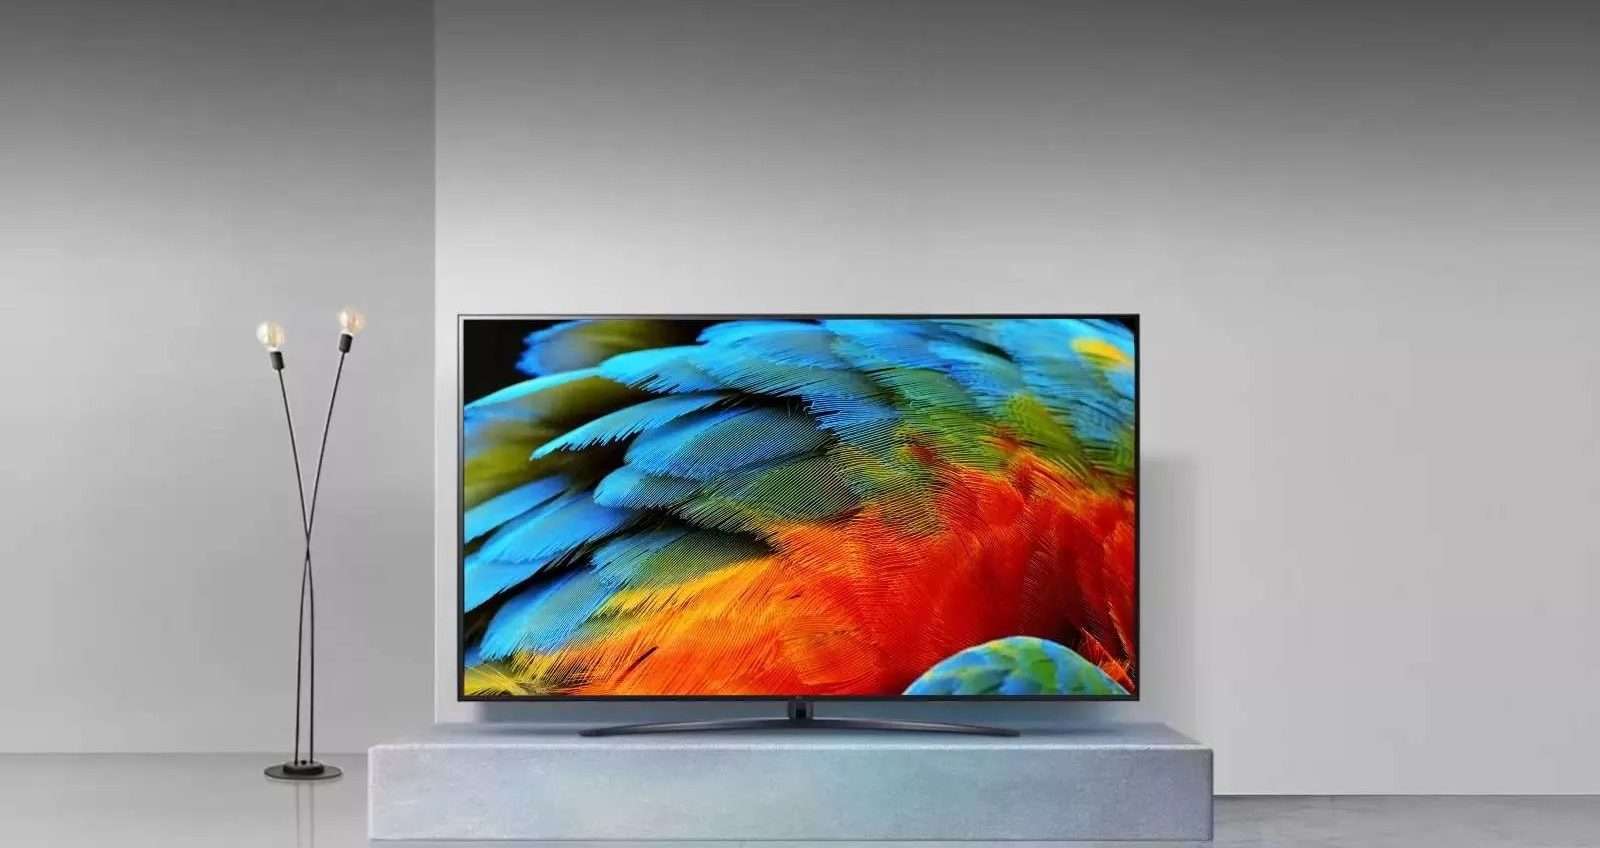 Questo Smart TV LG NanoCell in offerta a 319€ è un VERO AFFARE